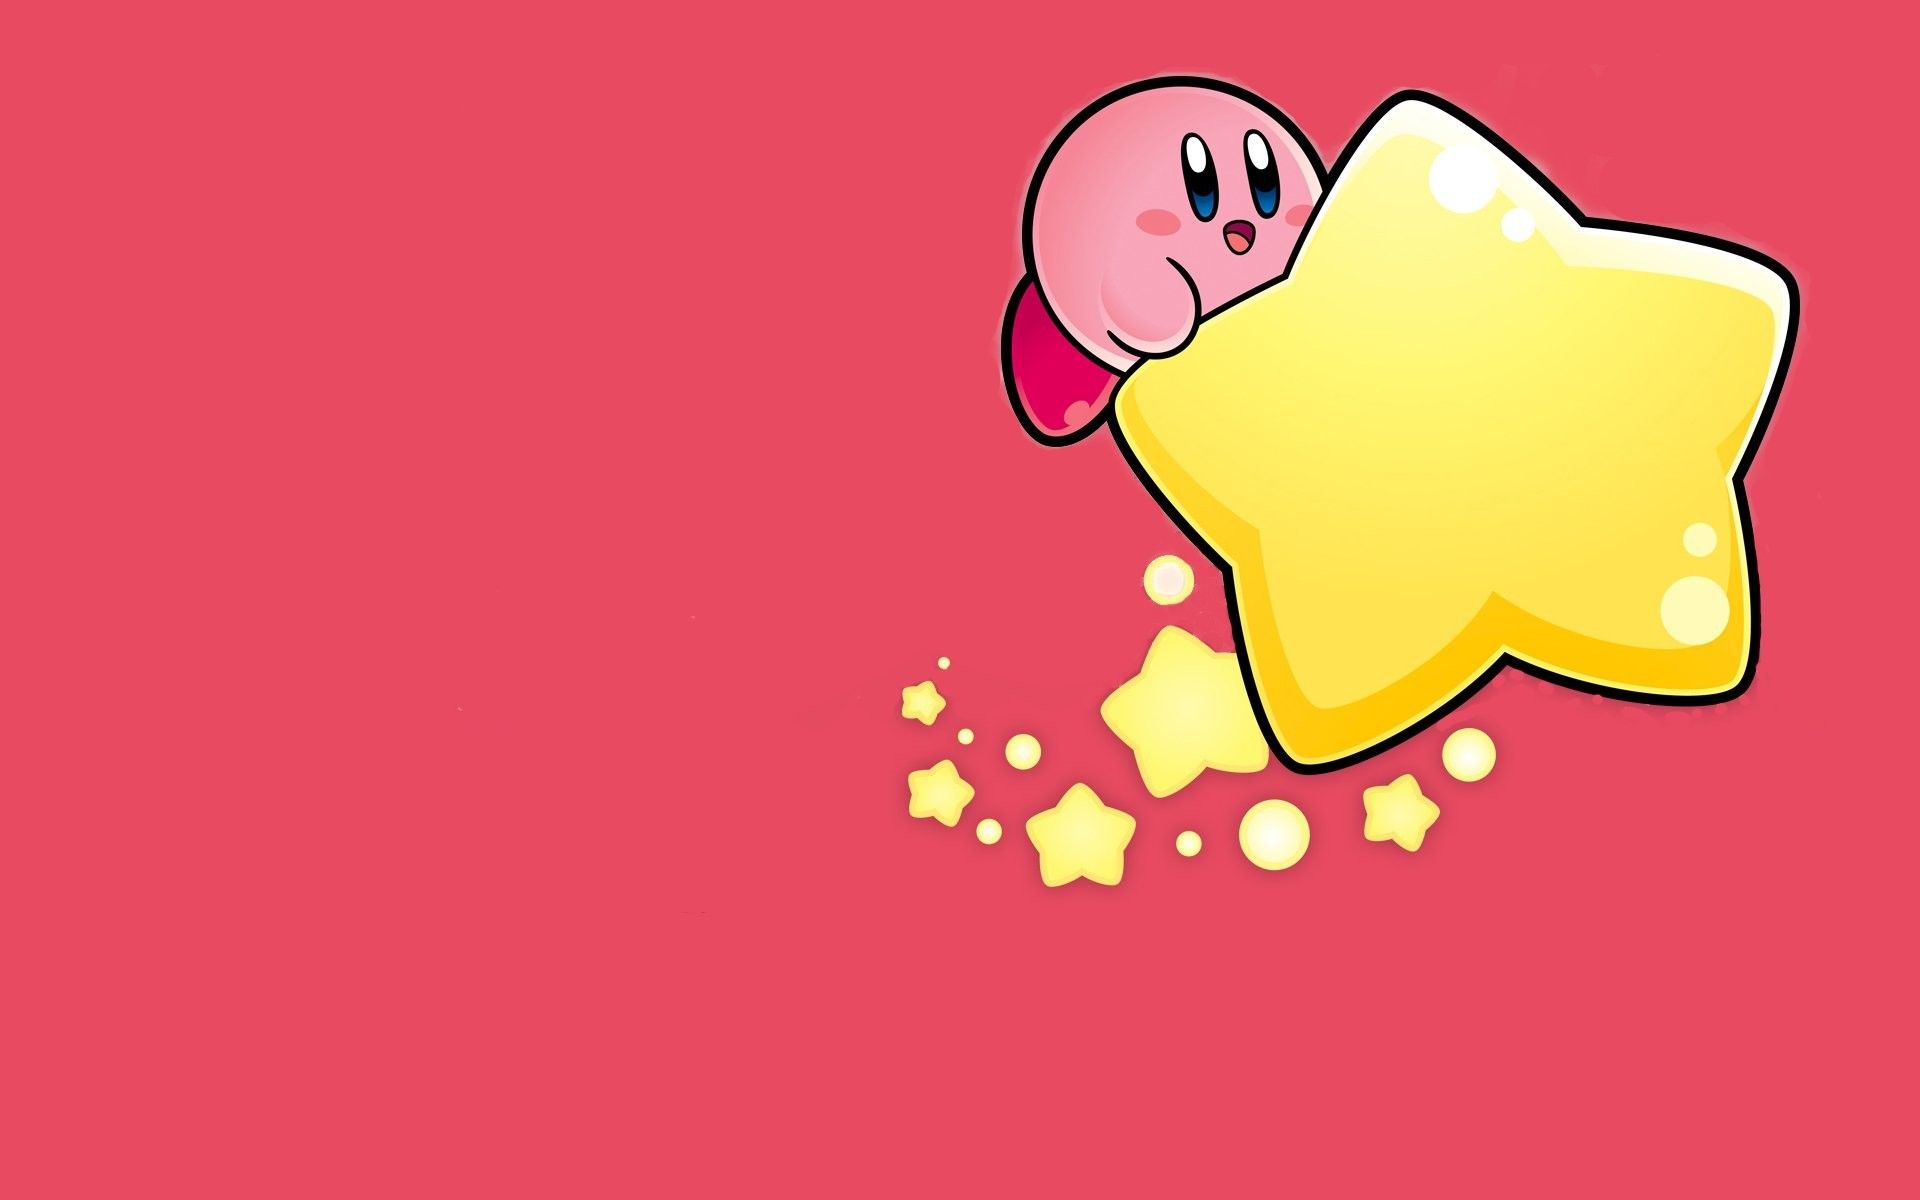 Hình nền Kirby sẽ làm mới màn hình của bạn và tạo ra sự khác biệt đáng kể so với bất kỳ ai khác. Hãy tải ngay hình nền Kirby để cùng sử dụng nhé!